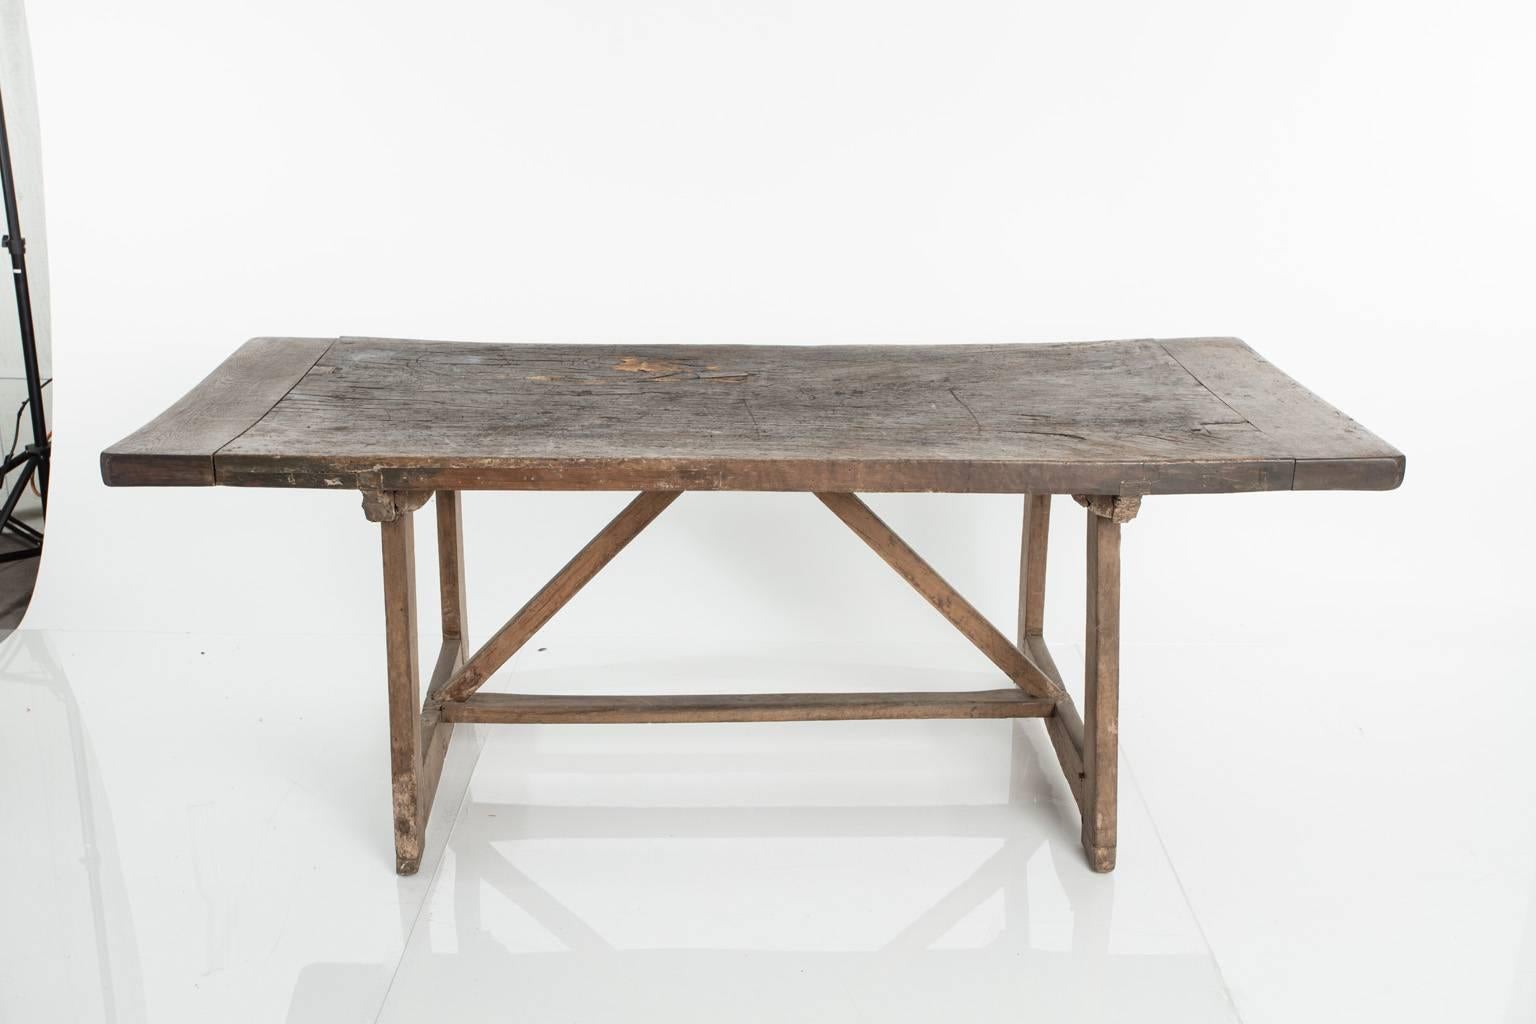 Italian walnut, single board work table. Trestle base with a breadboard top.